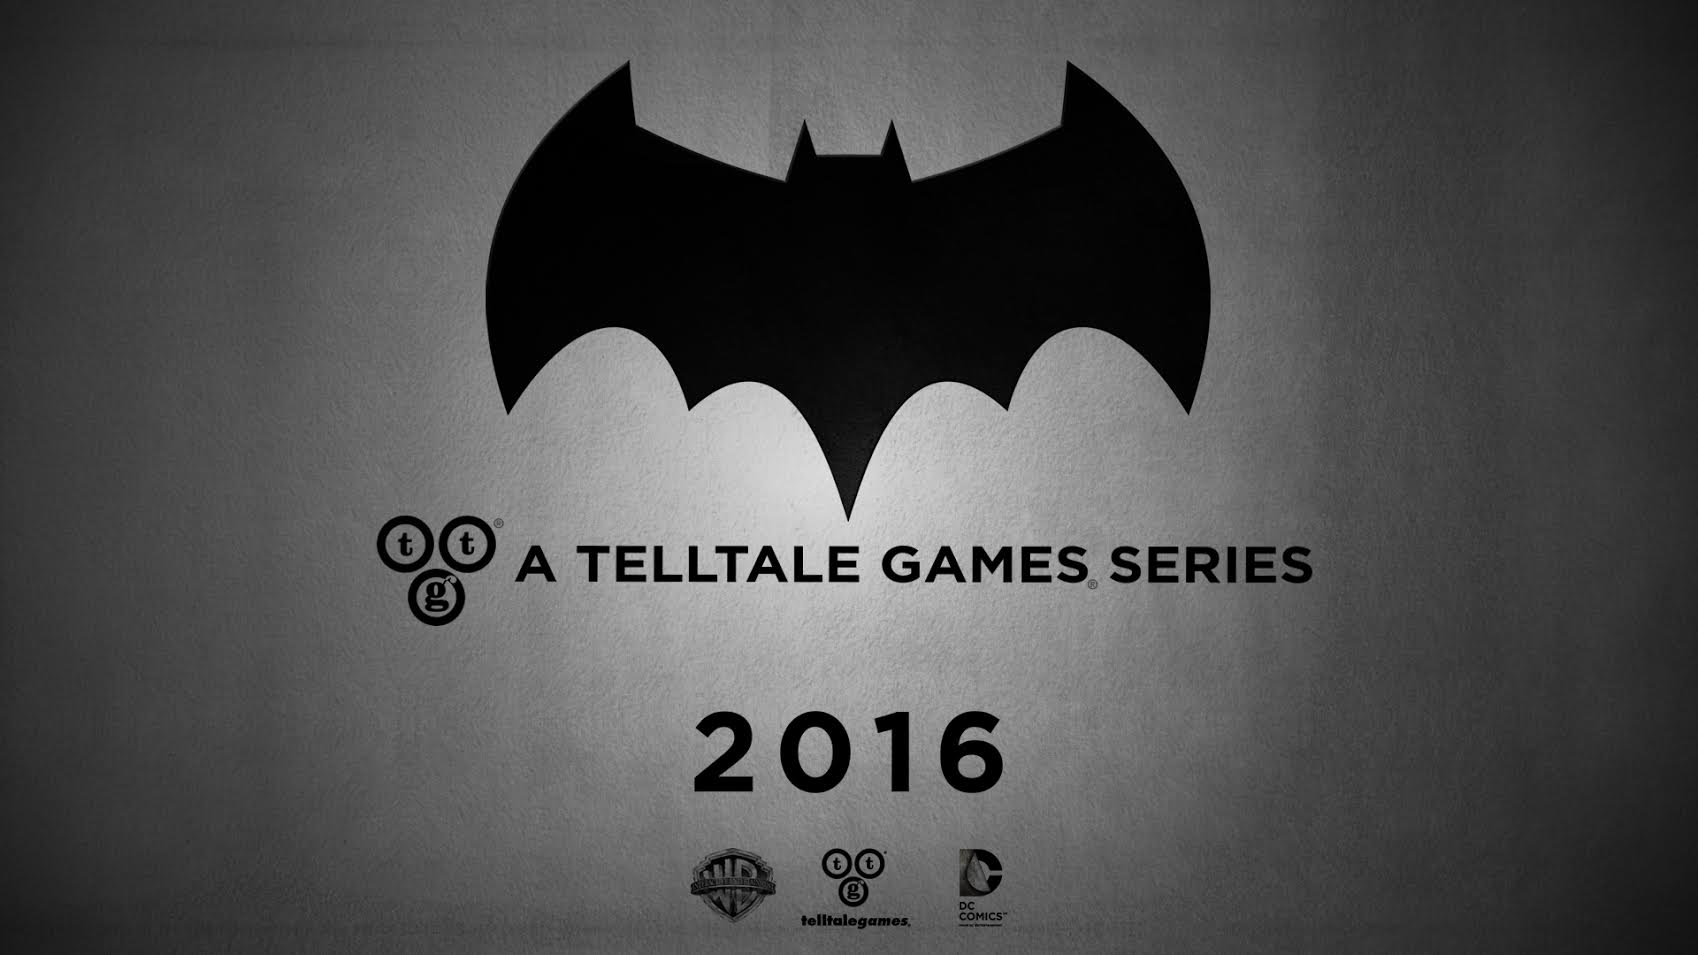 Batman 2016 A Telltale Games Series Logo Artwork Announcement